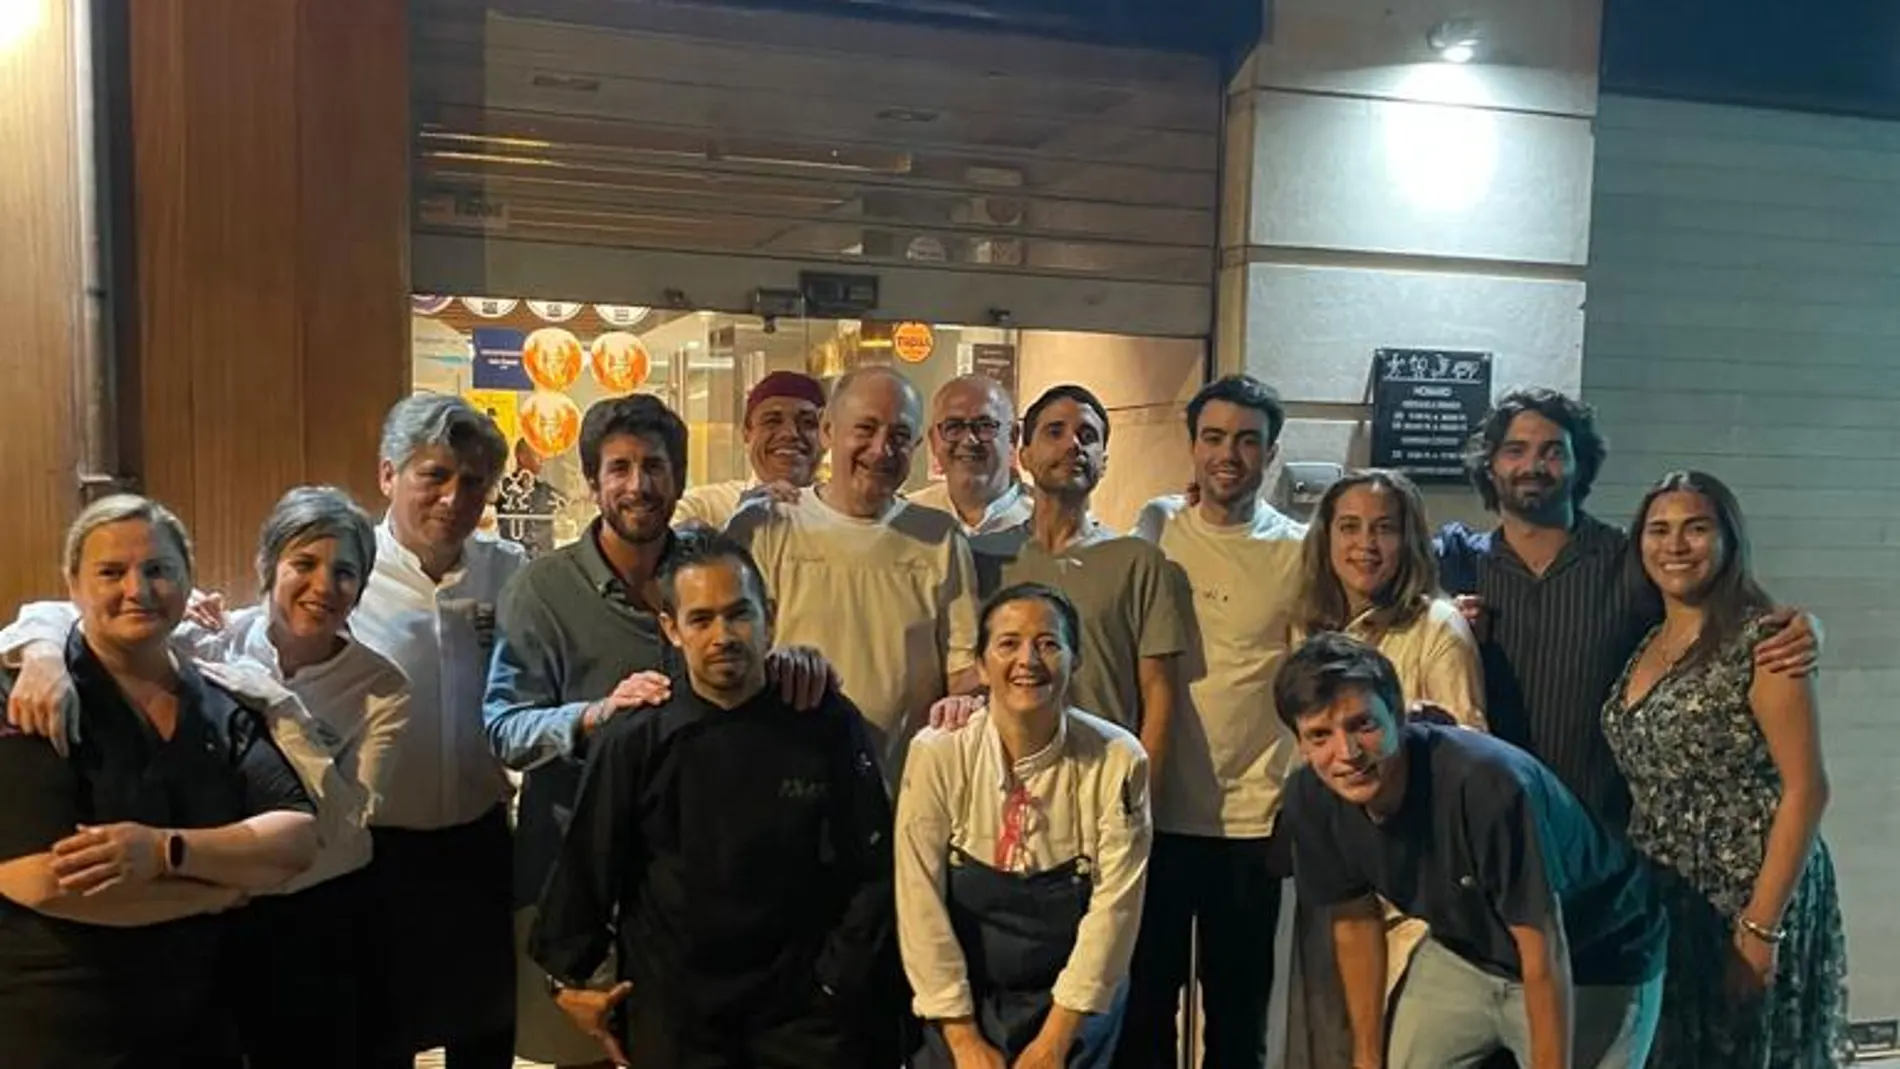 El equipo del restaurante Central capitaneado por Virgilio Martínez, coronado como el restaurante número 1 del mundo y la plantilla de Rausell después de la cena celebrada en su establecimiento